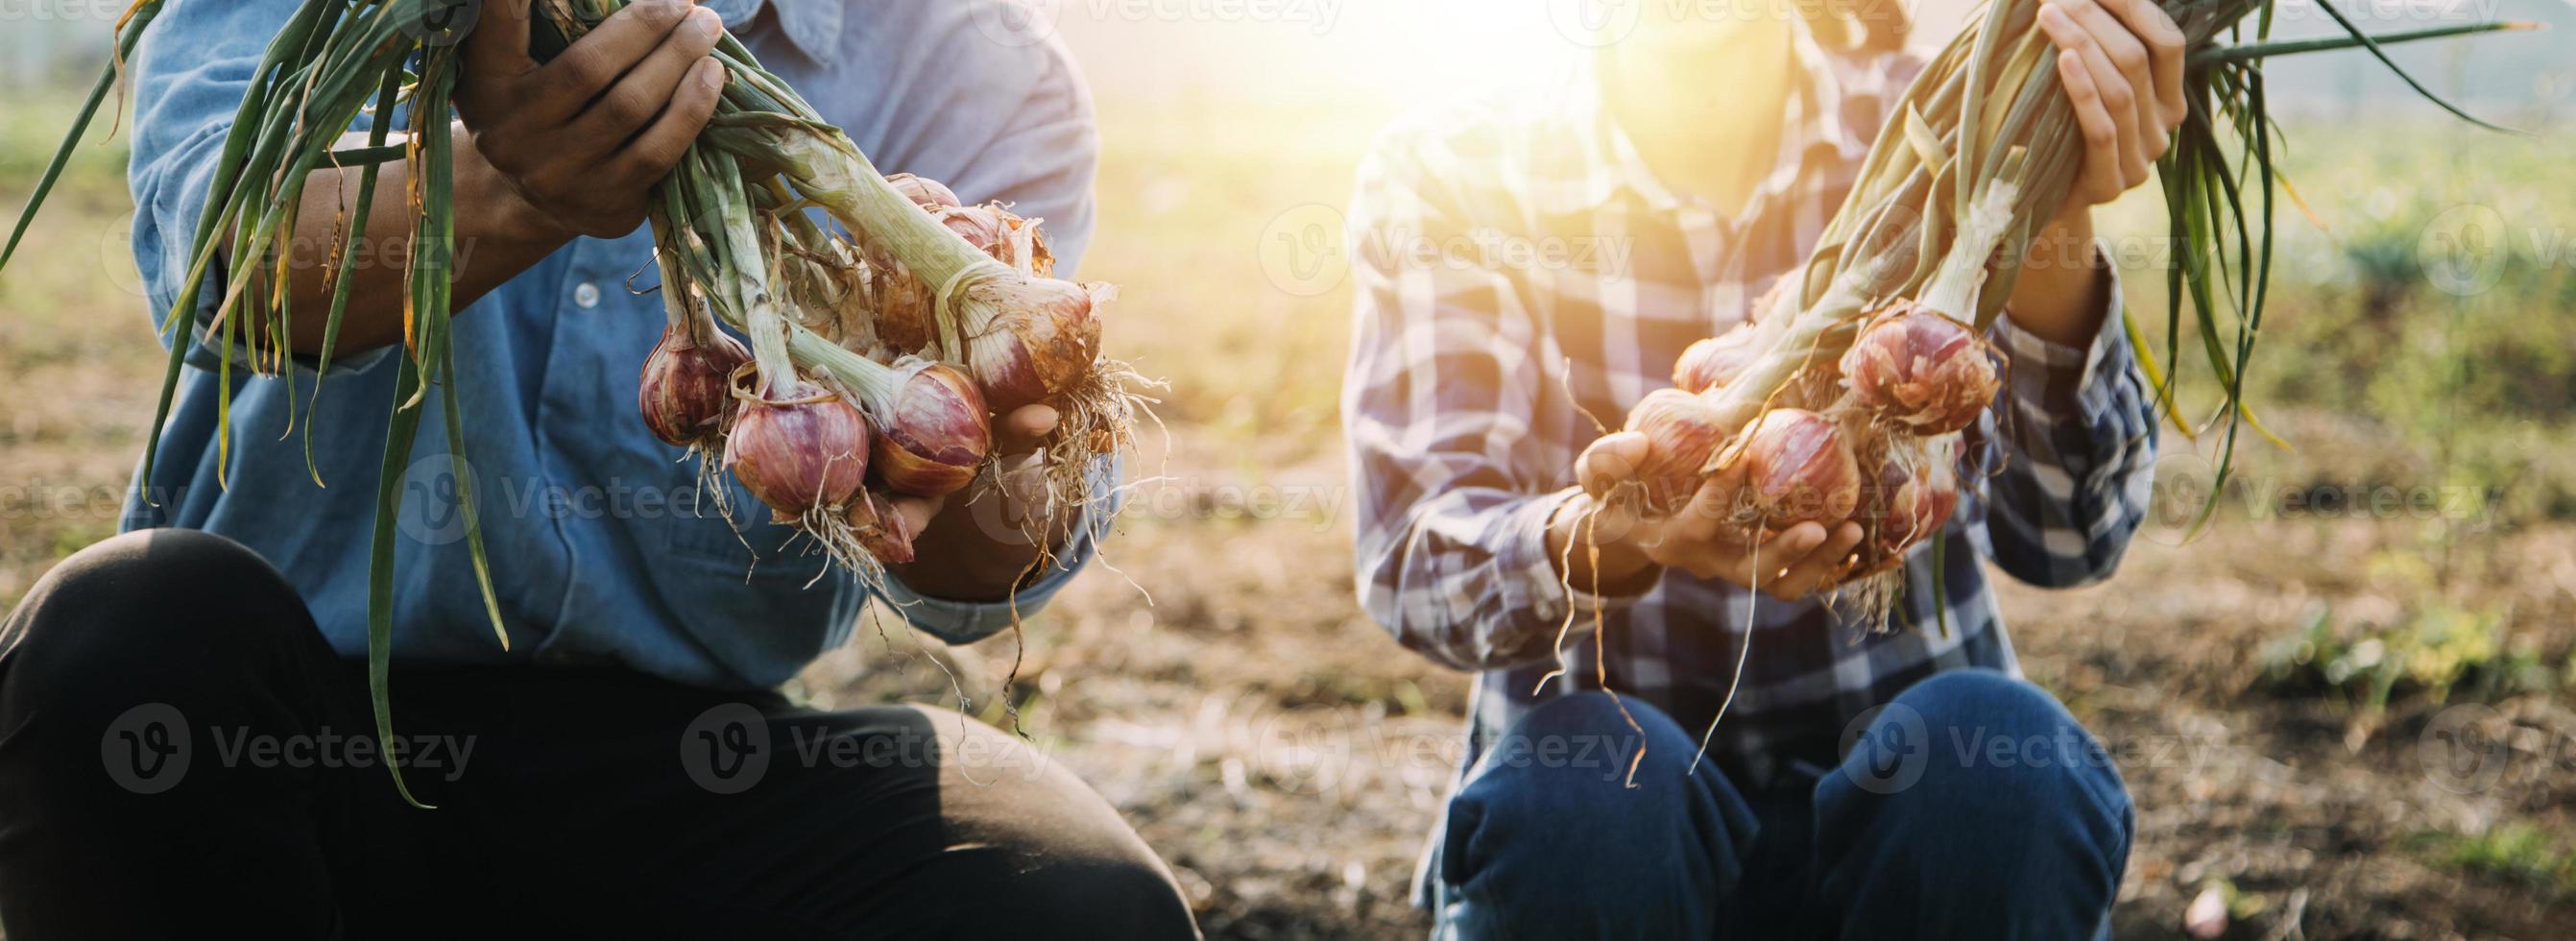 Aziatisch vrouw en Mens boer werken samen in biologisch hydrocultuur salade groente boerderij. gebruik makend van tablet inspecteren kwaliteit van sla in kas tuin. slim landbouw foto